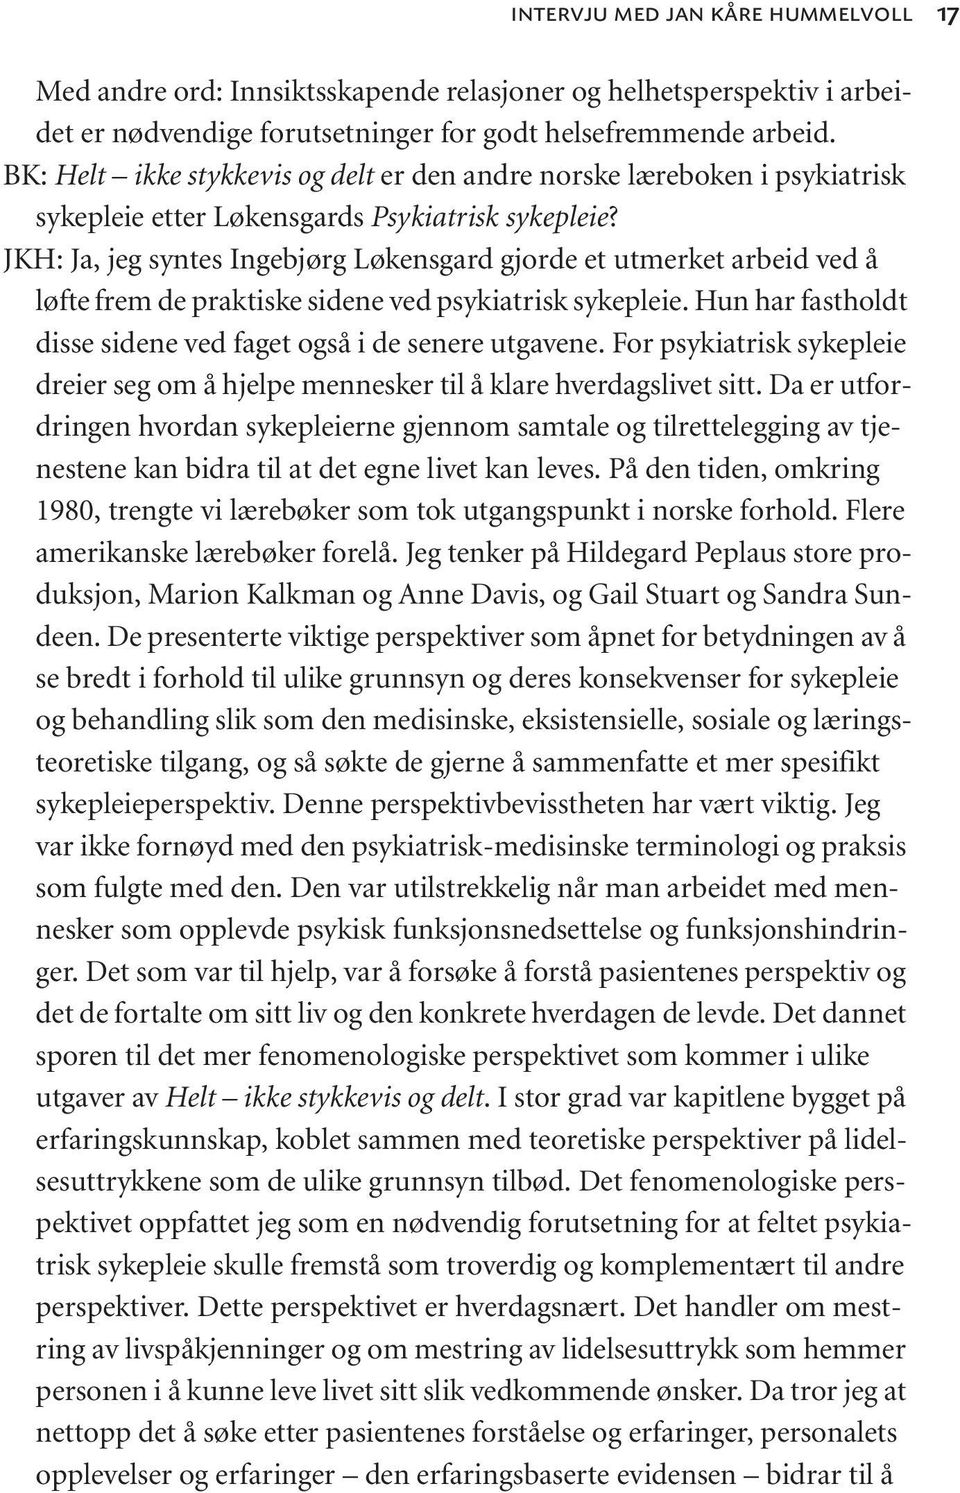 JKH: Ja, jeg syntes Ingebjørg Løkensgard gjorde et utmerket arbeid ved å løfte frem de praktiske sidene ved psykiatrisk sykepleie. Hun har fastholdt disse sidene ved faget også i de senere utgavene.